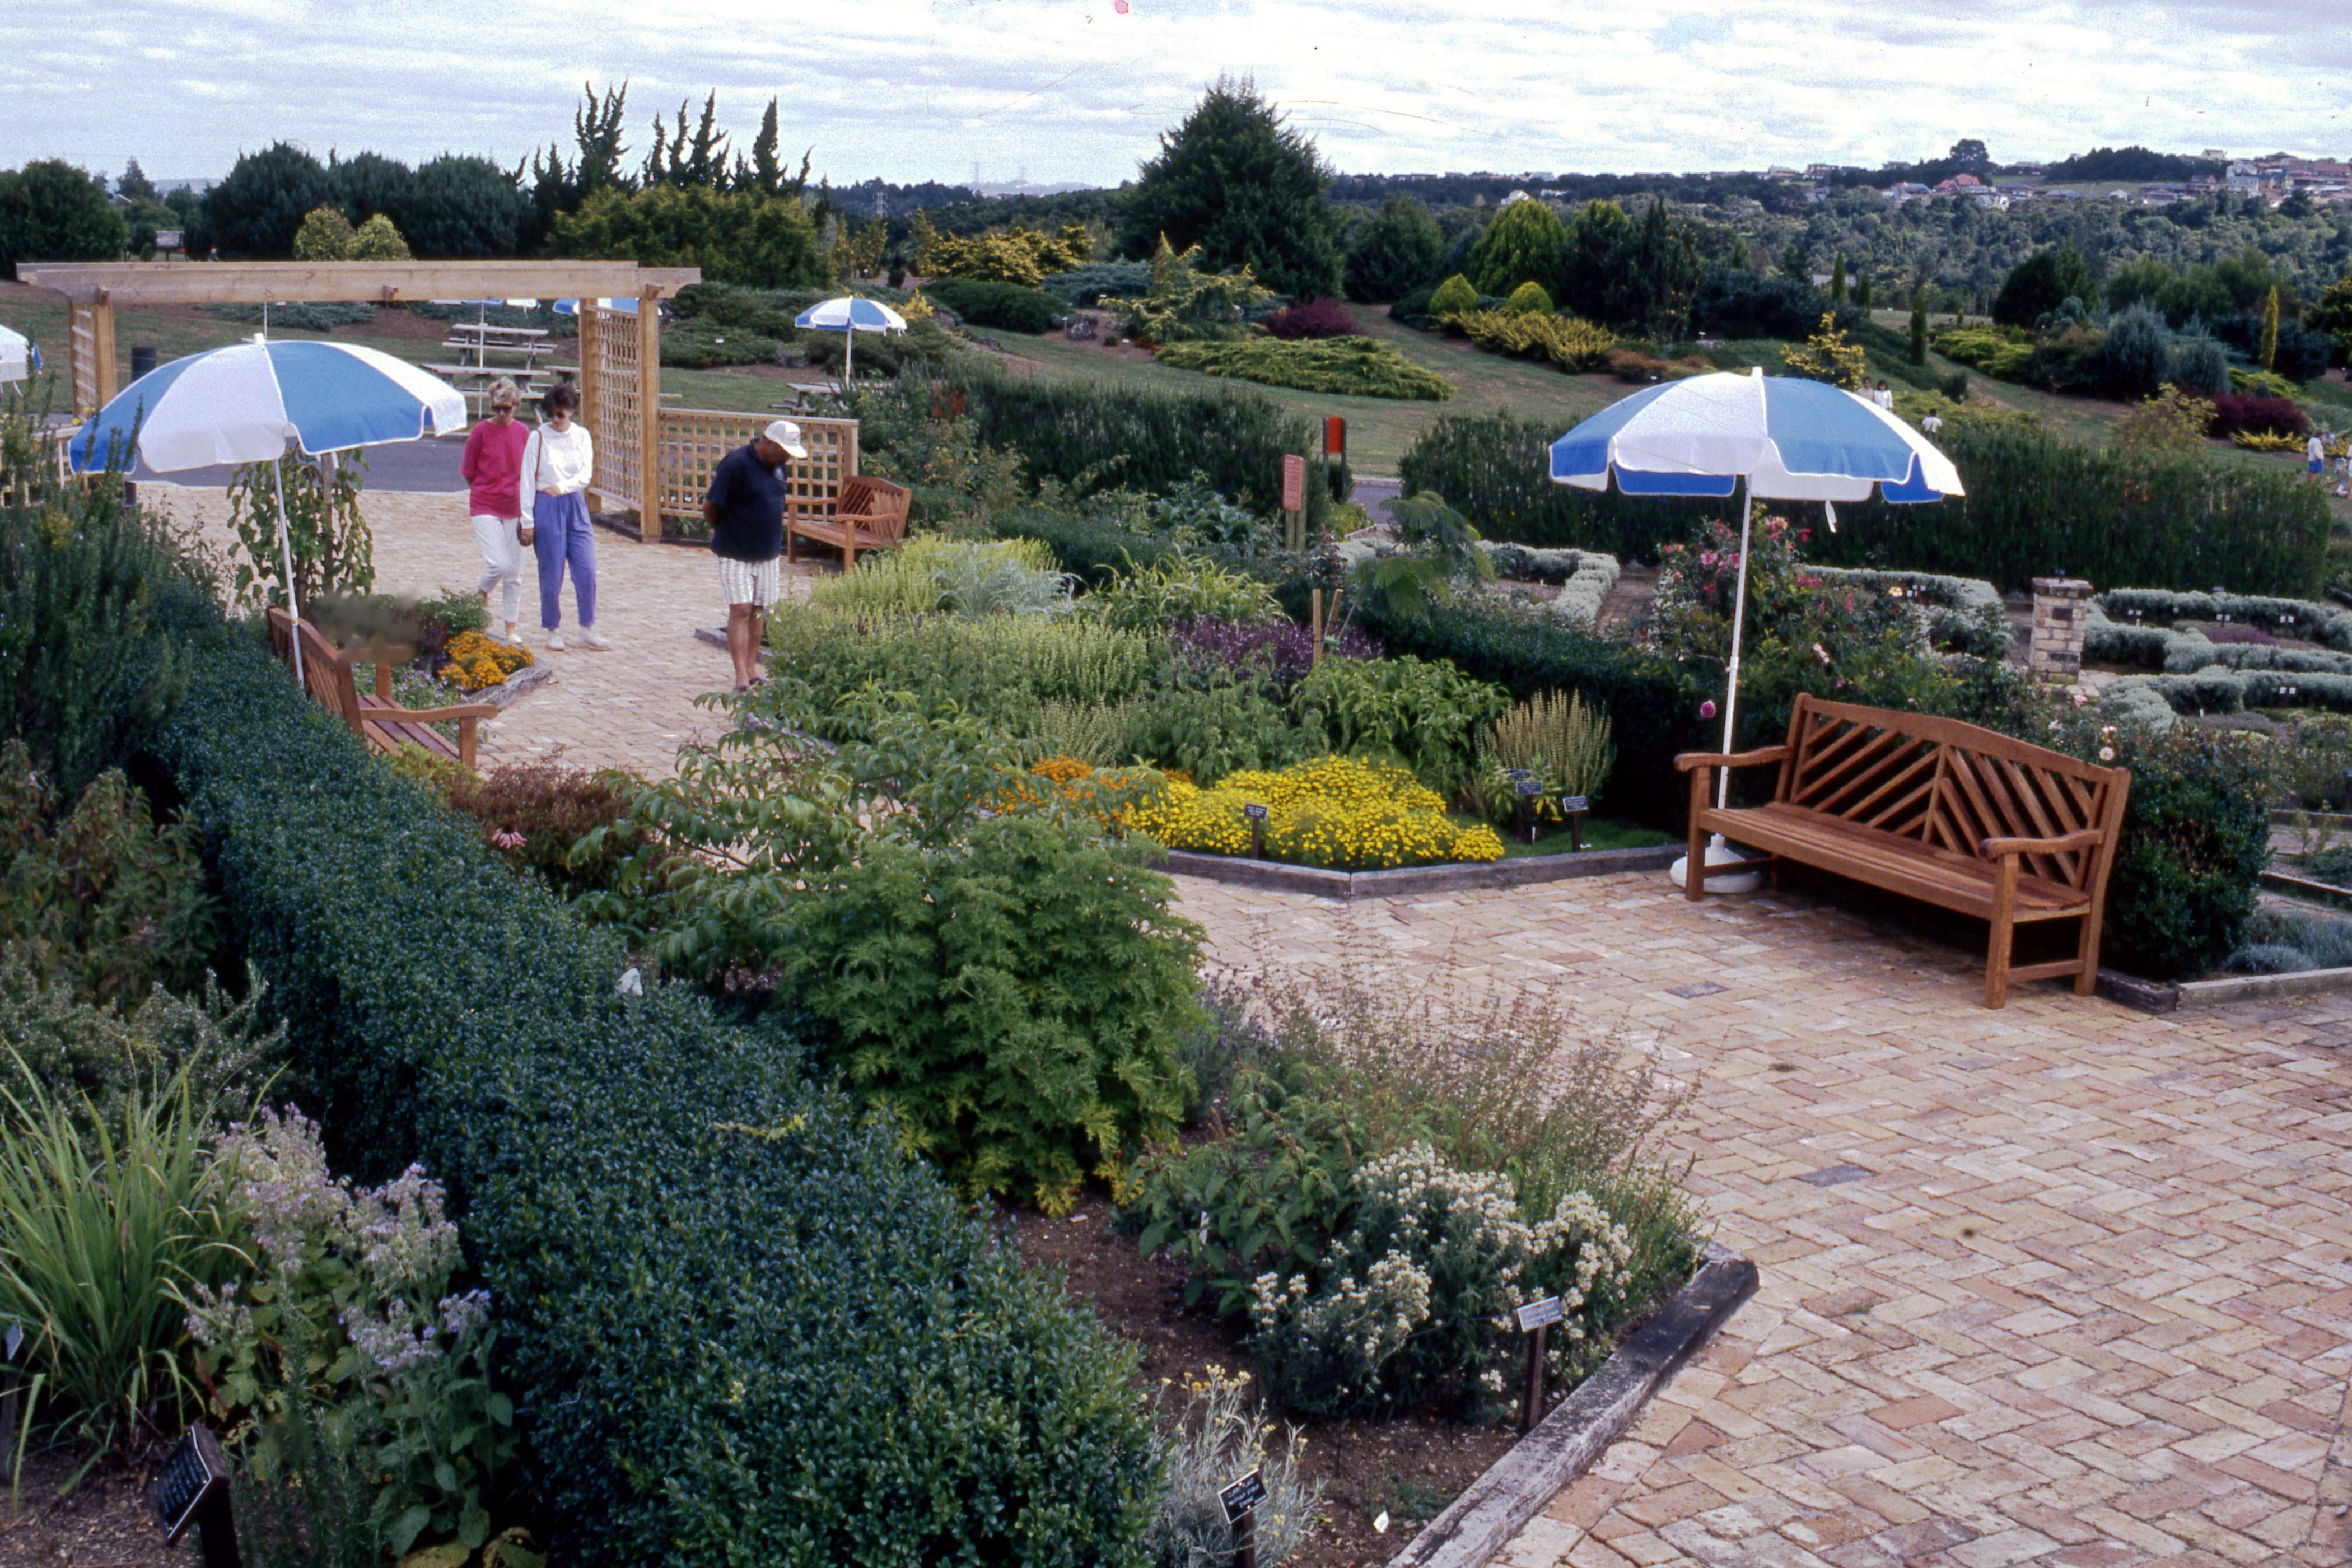 1991. The Herb Garden.